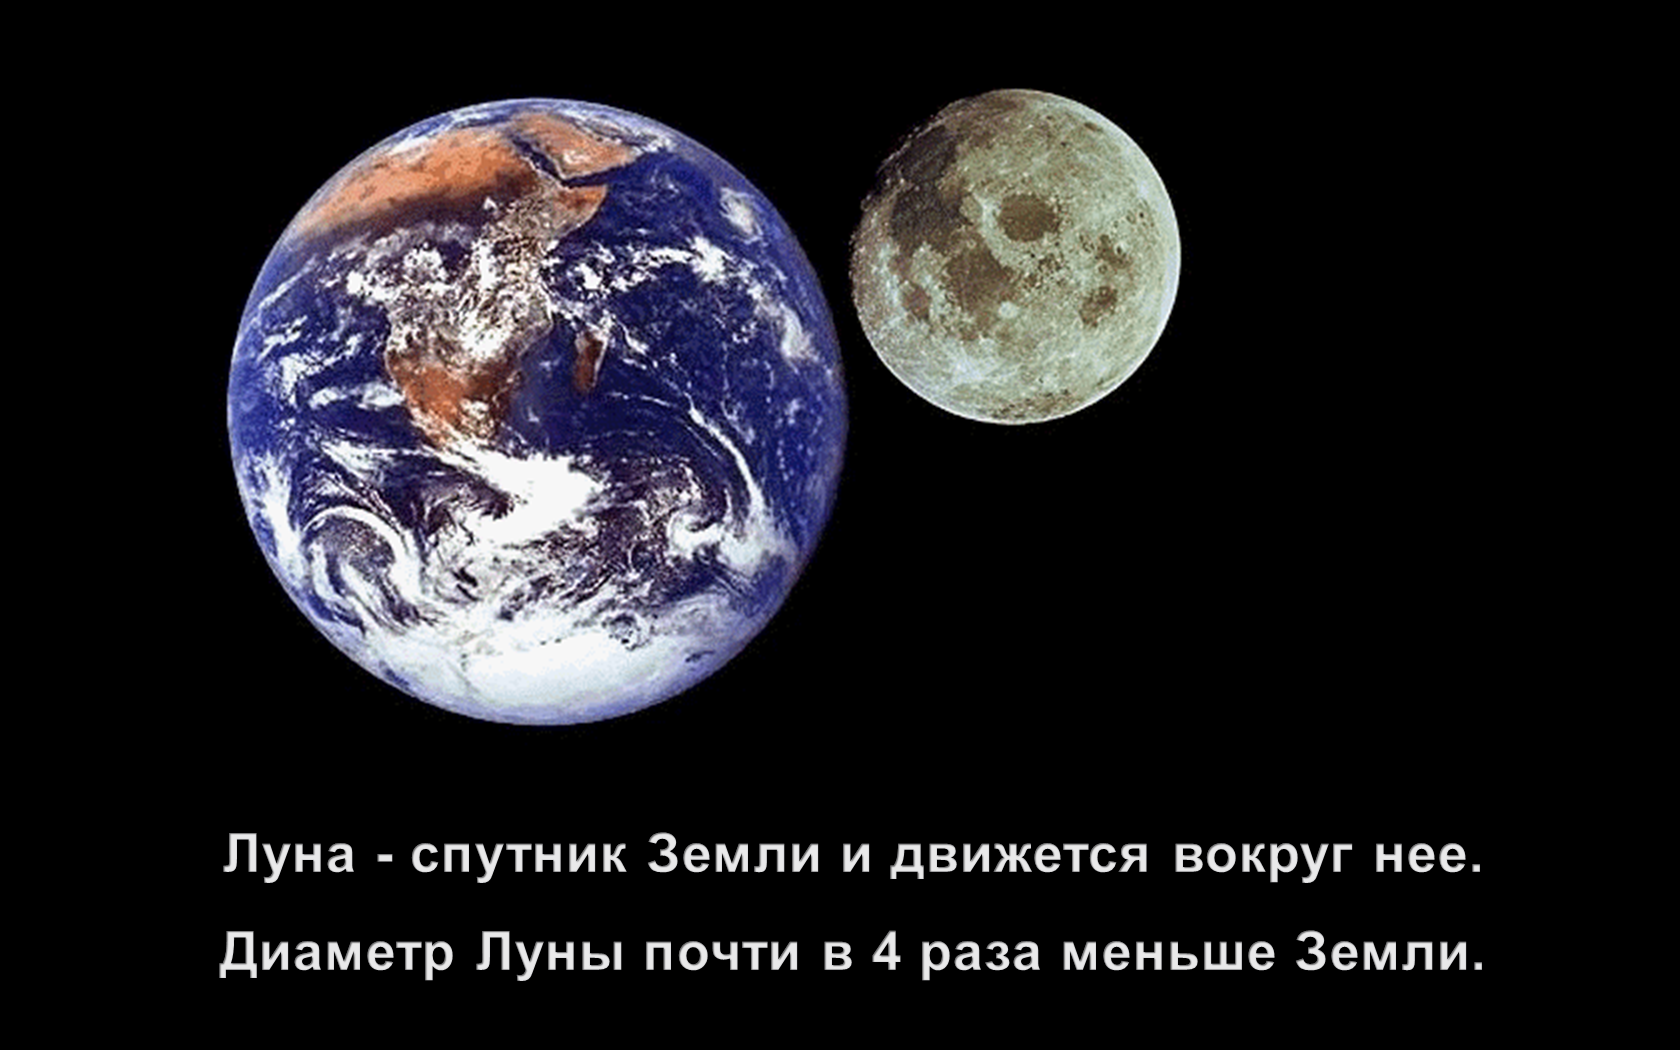 Спутники больше луны. Луна Спутник земли. Естественный Спутник земли. Планета земля со спутника. Планета земля со спутником Луна.